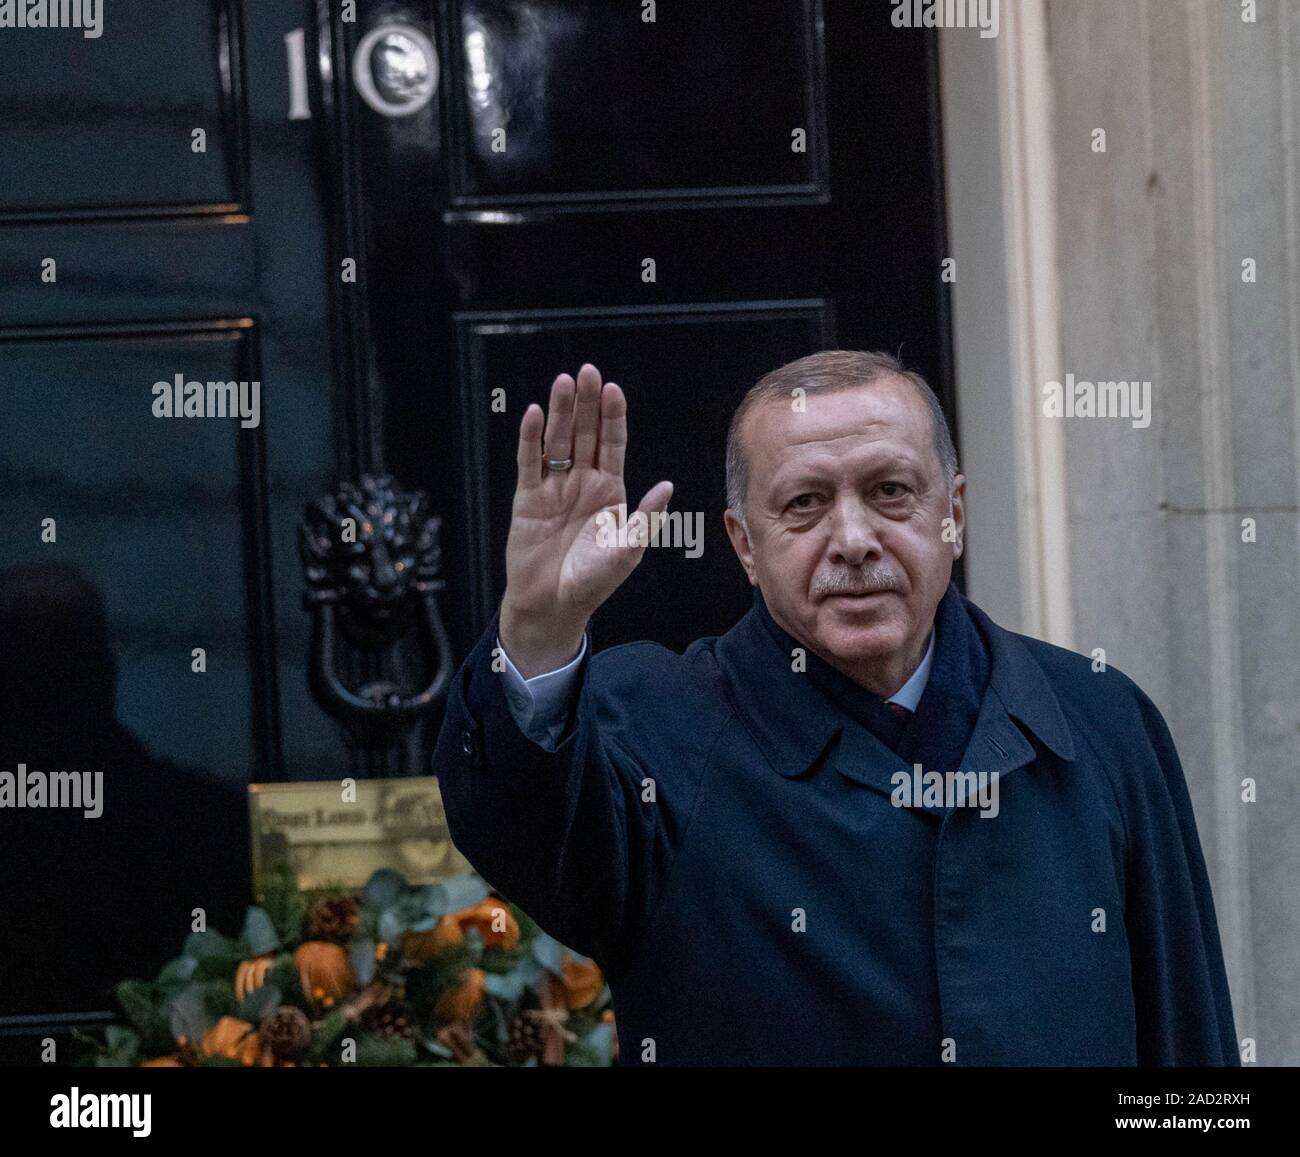 31/12/2019 London UK 3e les dirigeants de l'OTAN arrivent au 10 Downing Street durant le sommet de l'OTAN, Recep Tayyip Erdogan, Président de la Turquie,Ian DavidsonAlamy Live News Banque D'Images